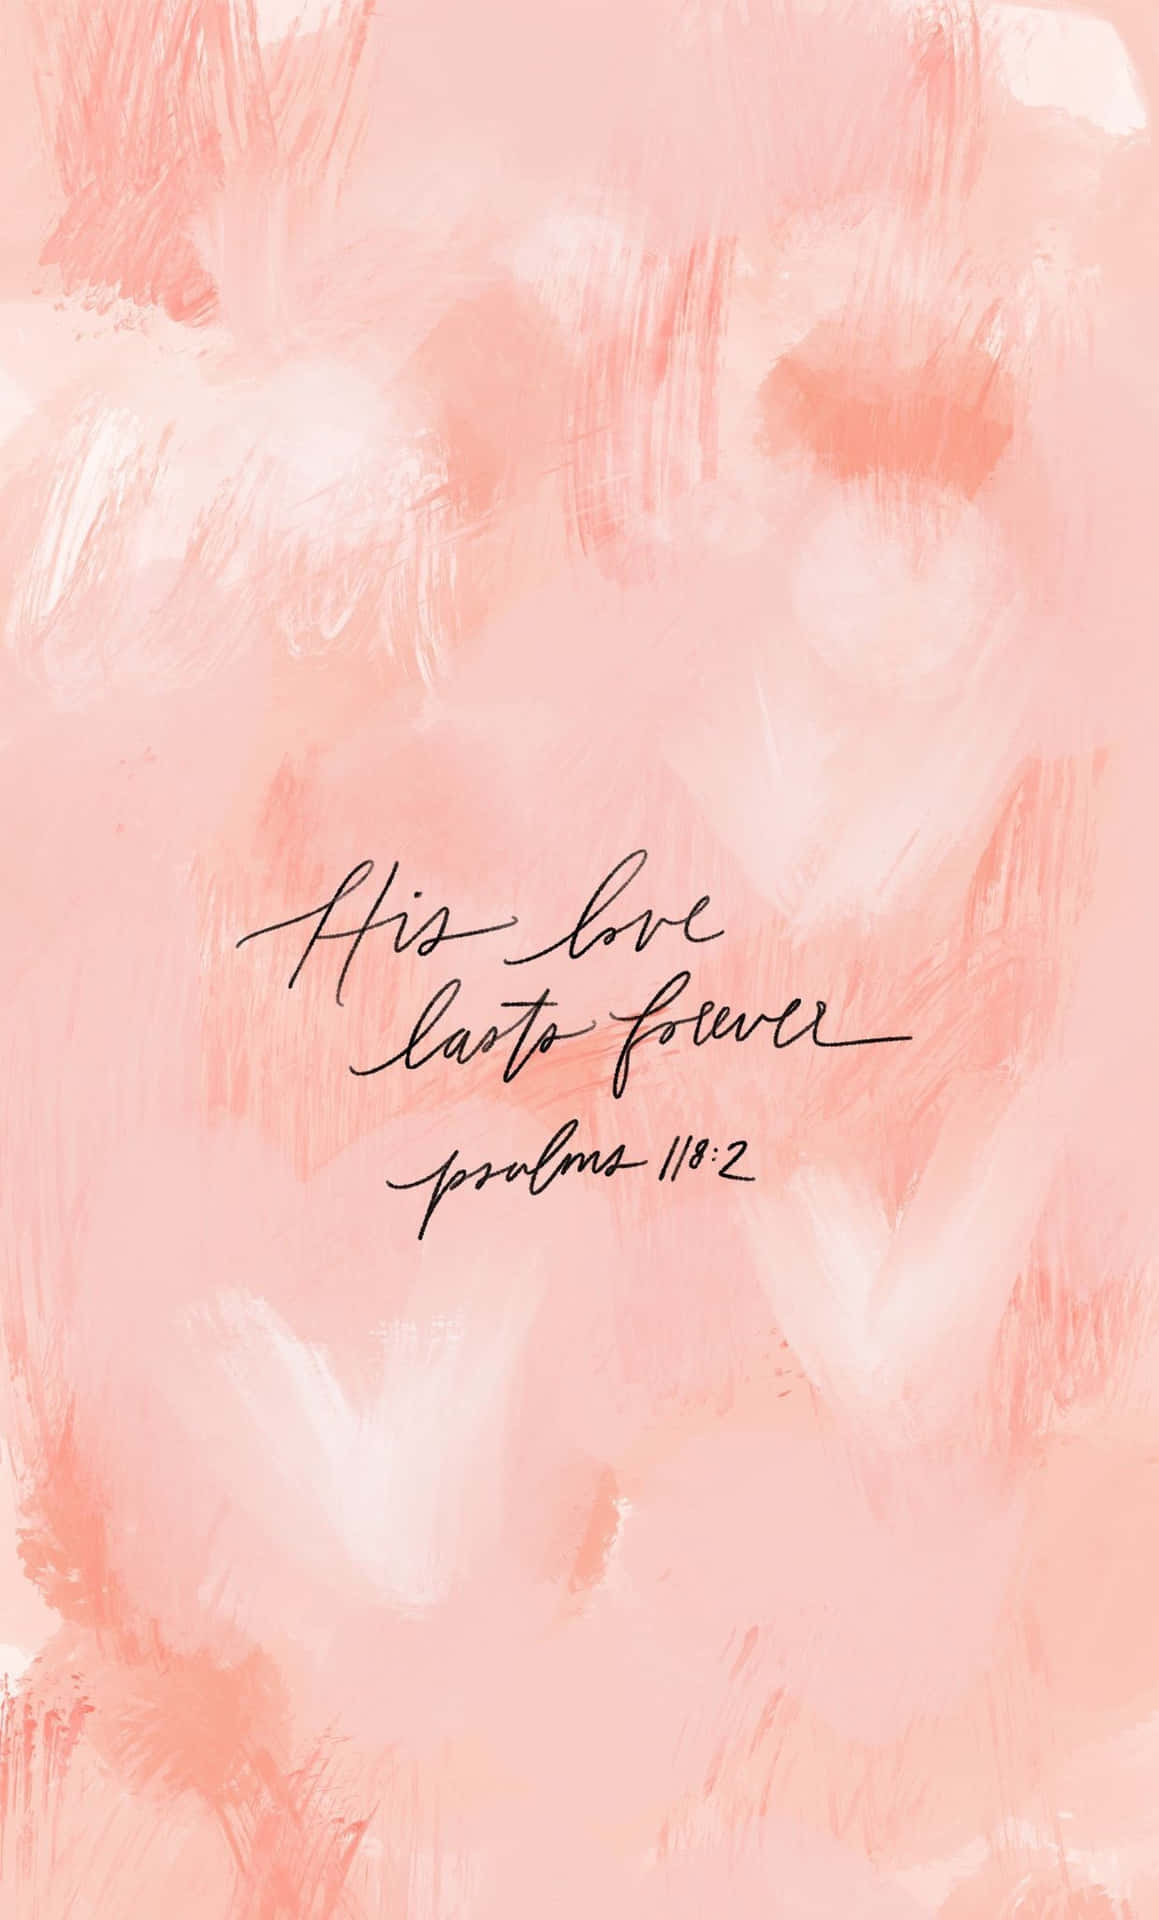 Dette kærlighed varer evigt - salme 119: 90 Wallpaper